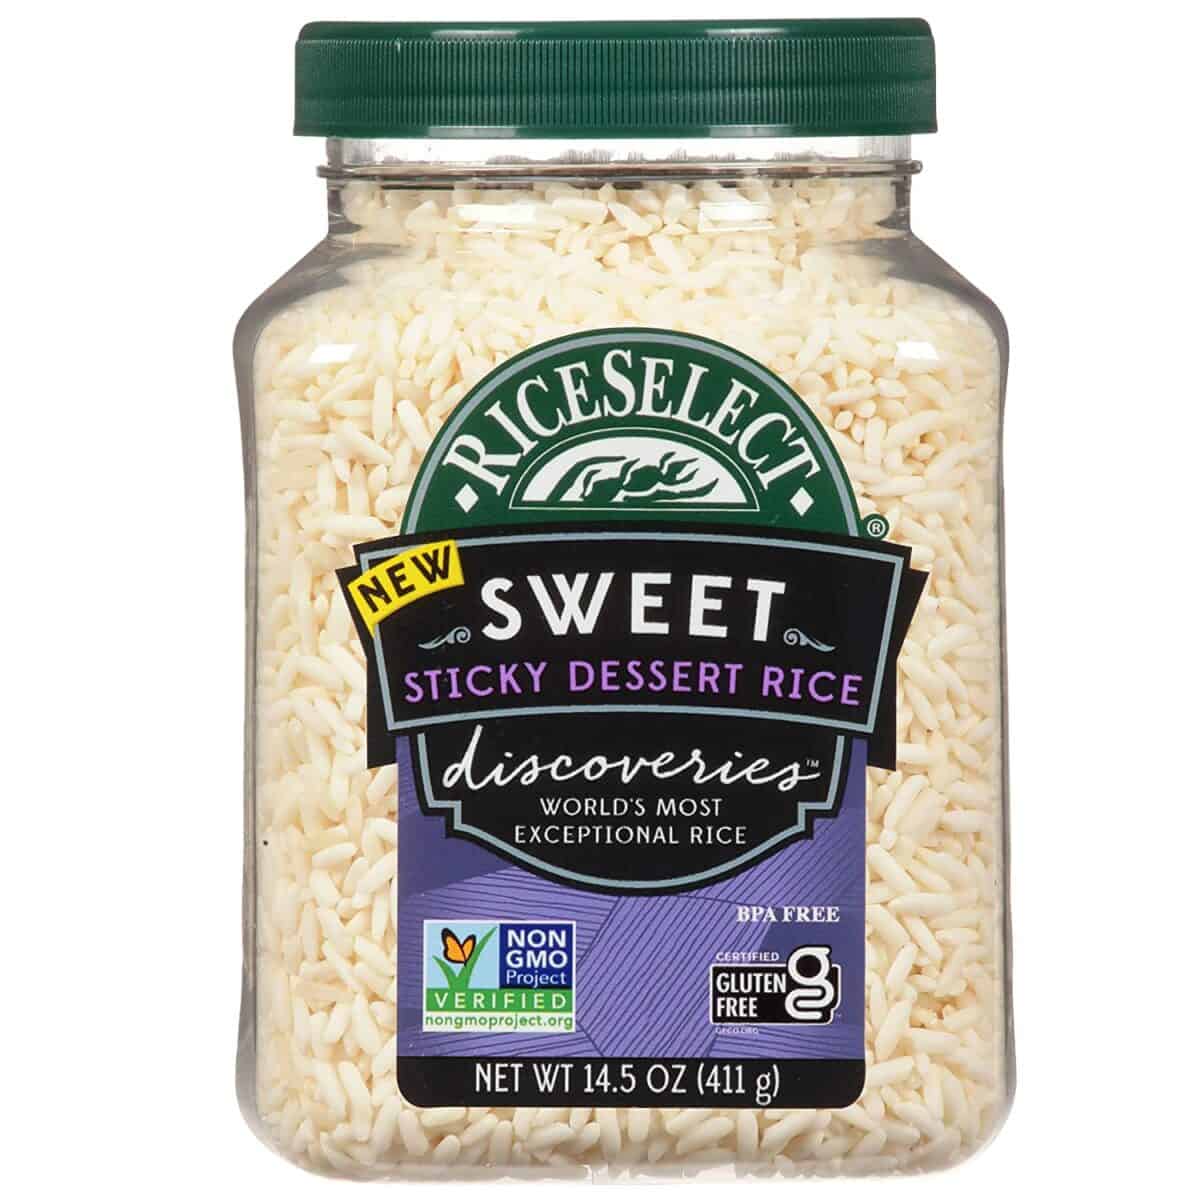 最好的非轉基因糯米 - RiceSelect 甜糯米